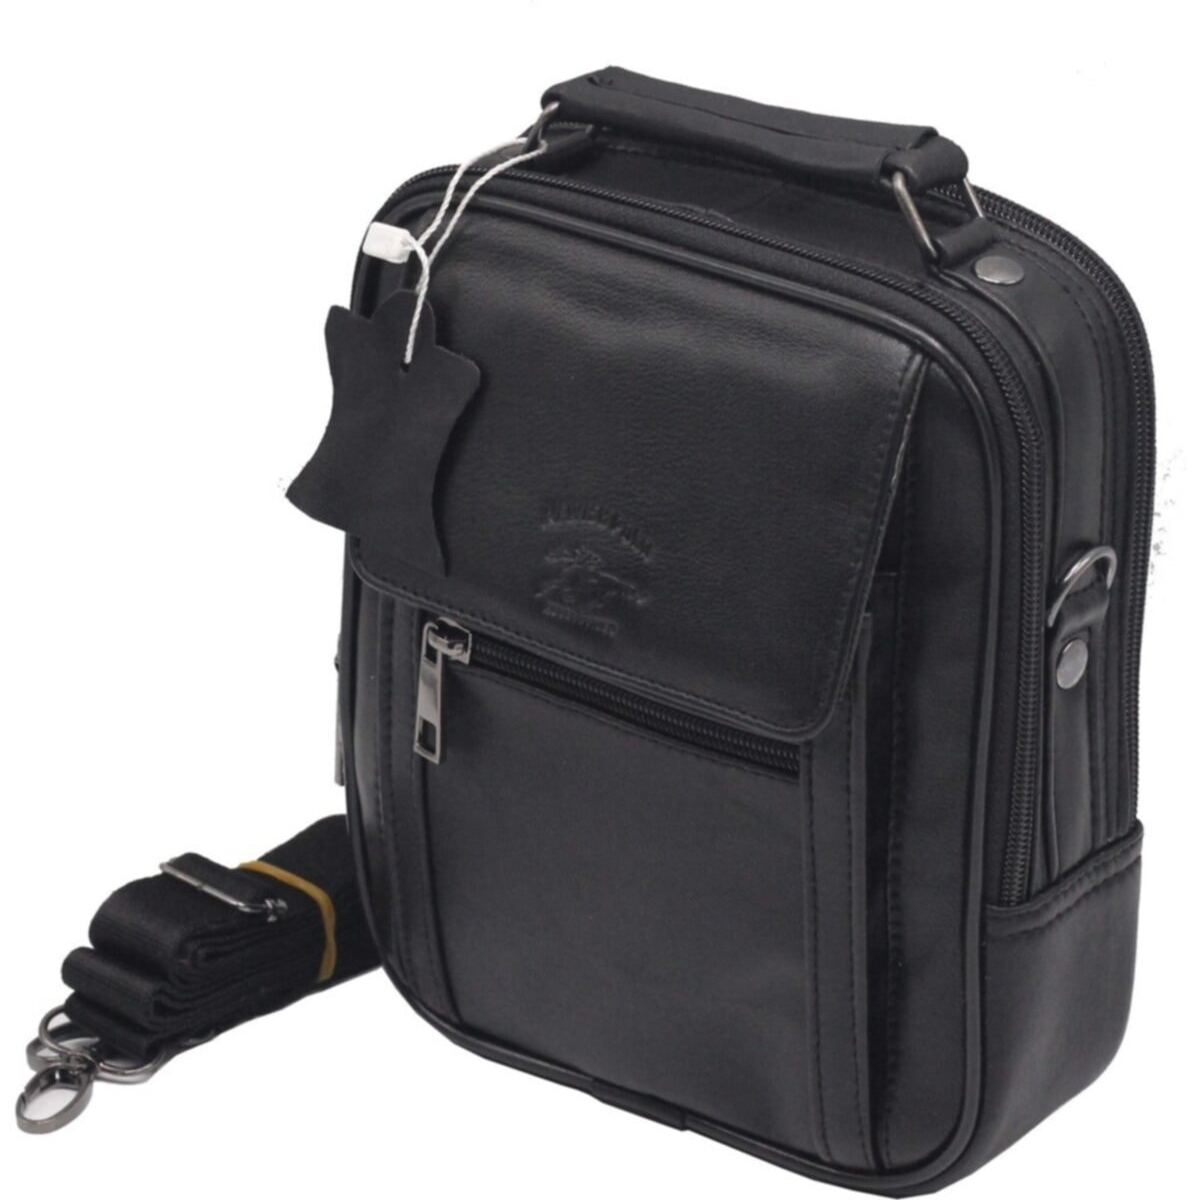 Flo buybox nw-3001 kapaklı orta boy hakiki deri kasalı erkek el ve omuz çantası SİYAH. 3